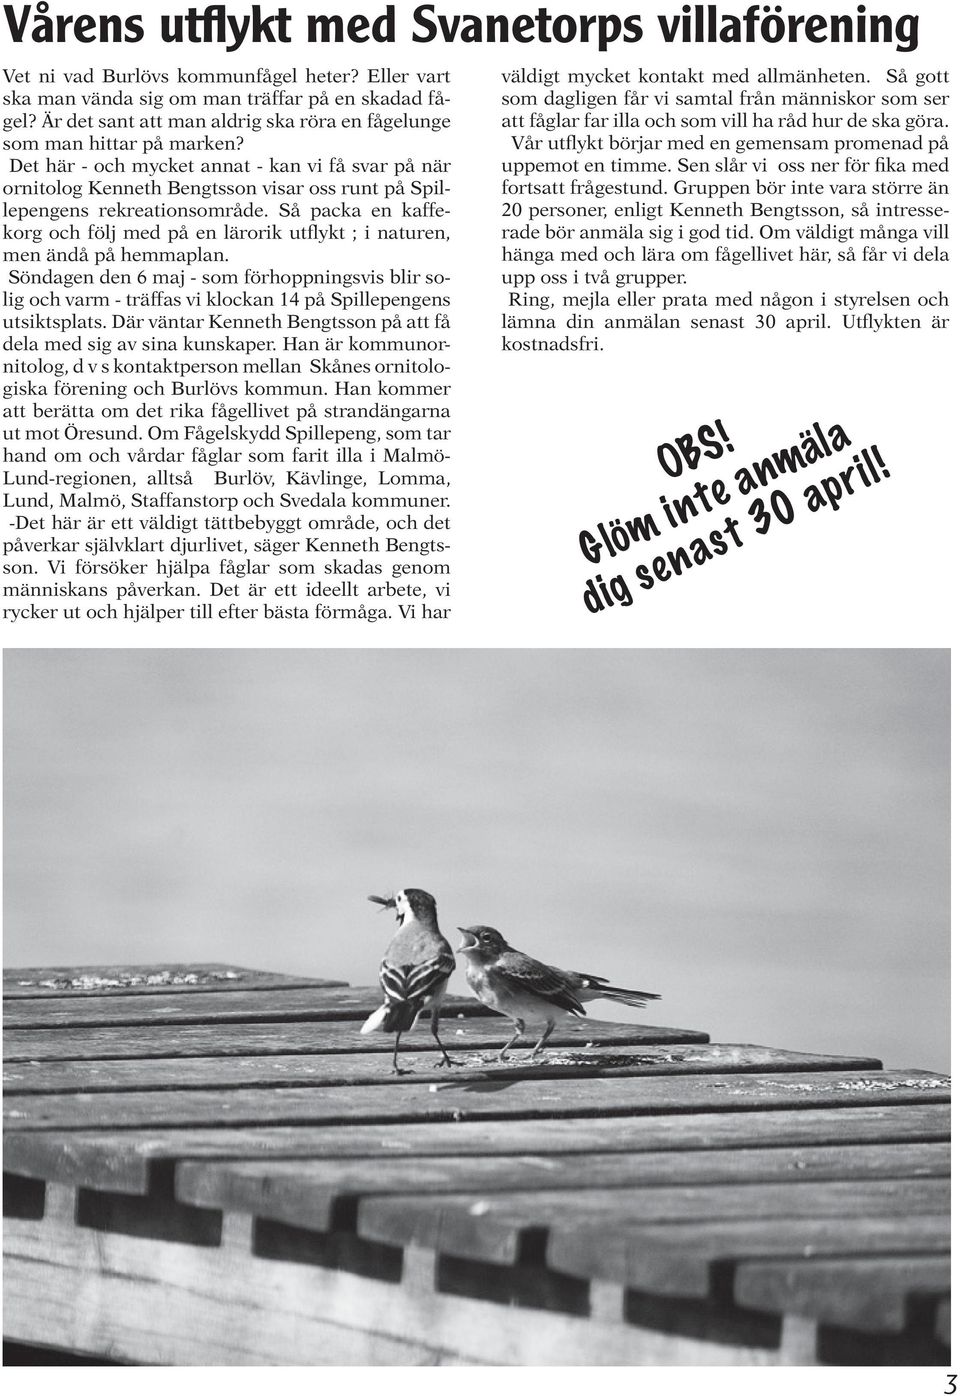 Det här - och mycket annat - kan vi få svar på när ornitolog Kenneth Bengtsson visar oss runt på Spillepengens rekreationsområde.